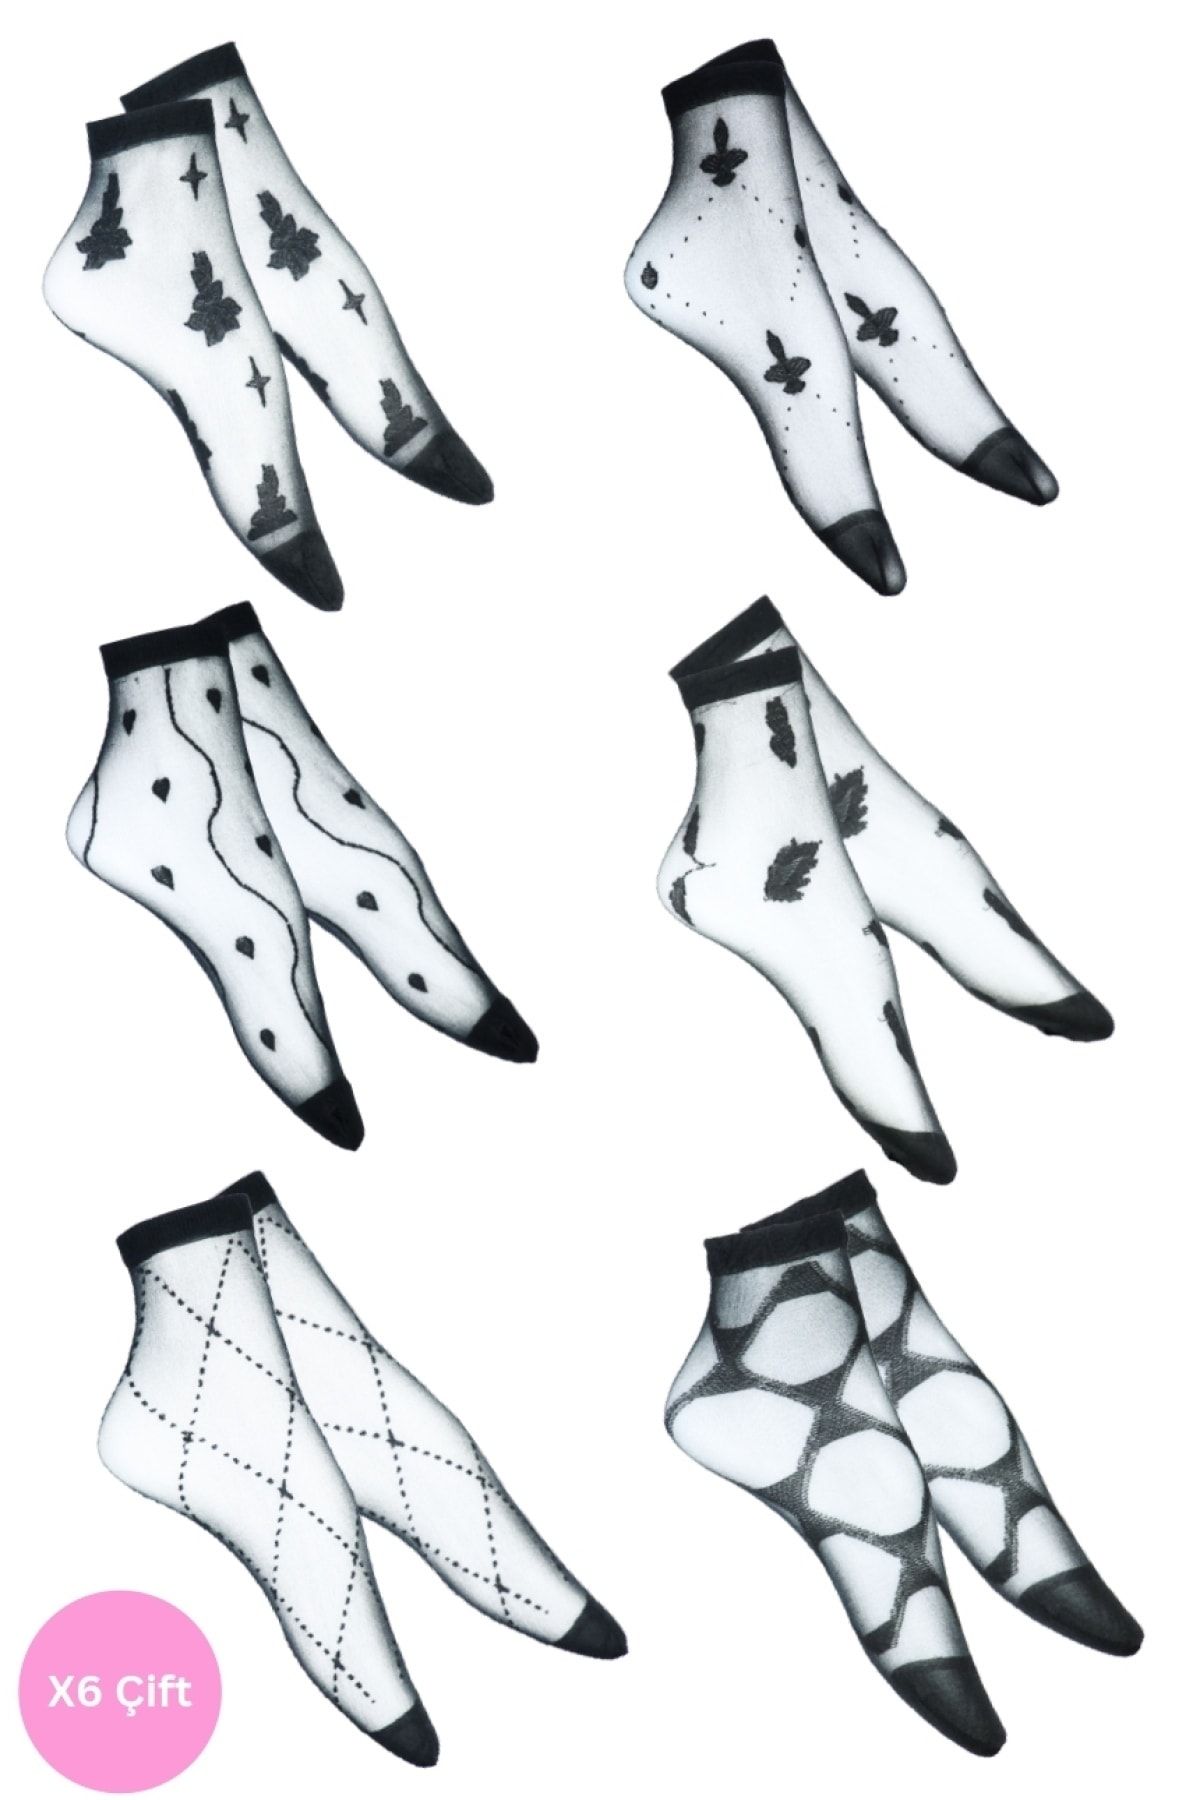 SOCKS 4U Kadın Desenli Siyah Tül Çorap 6'lı Paket